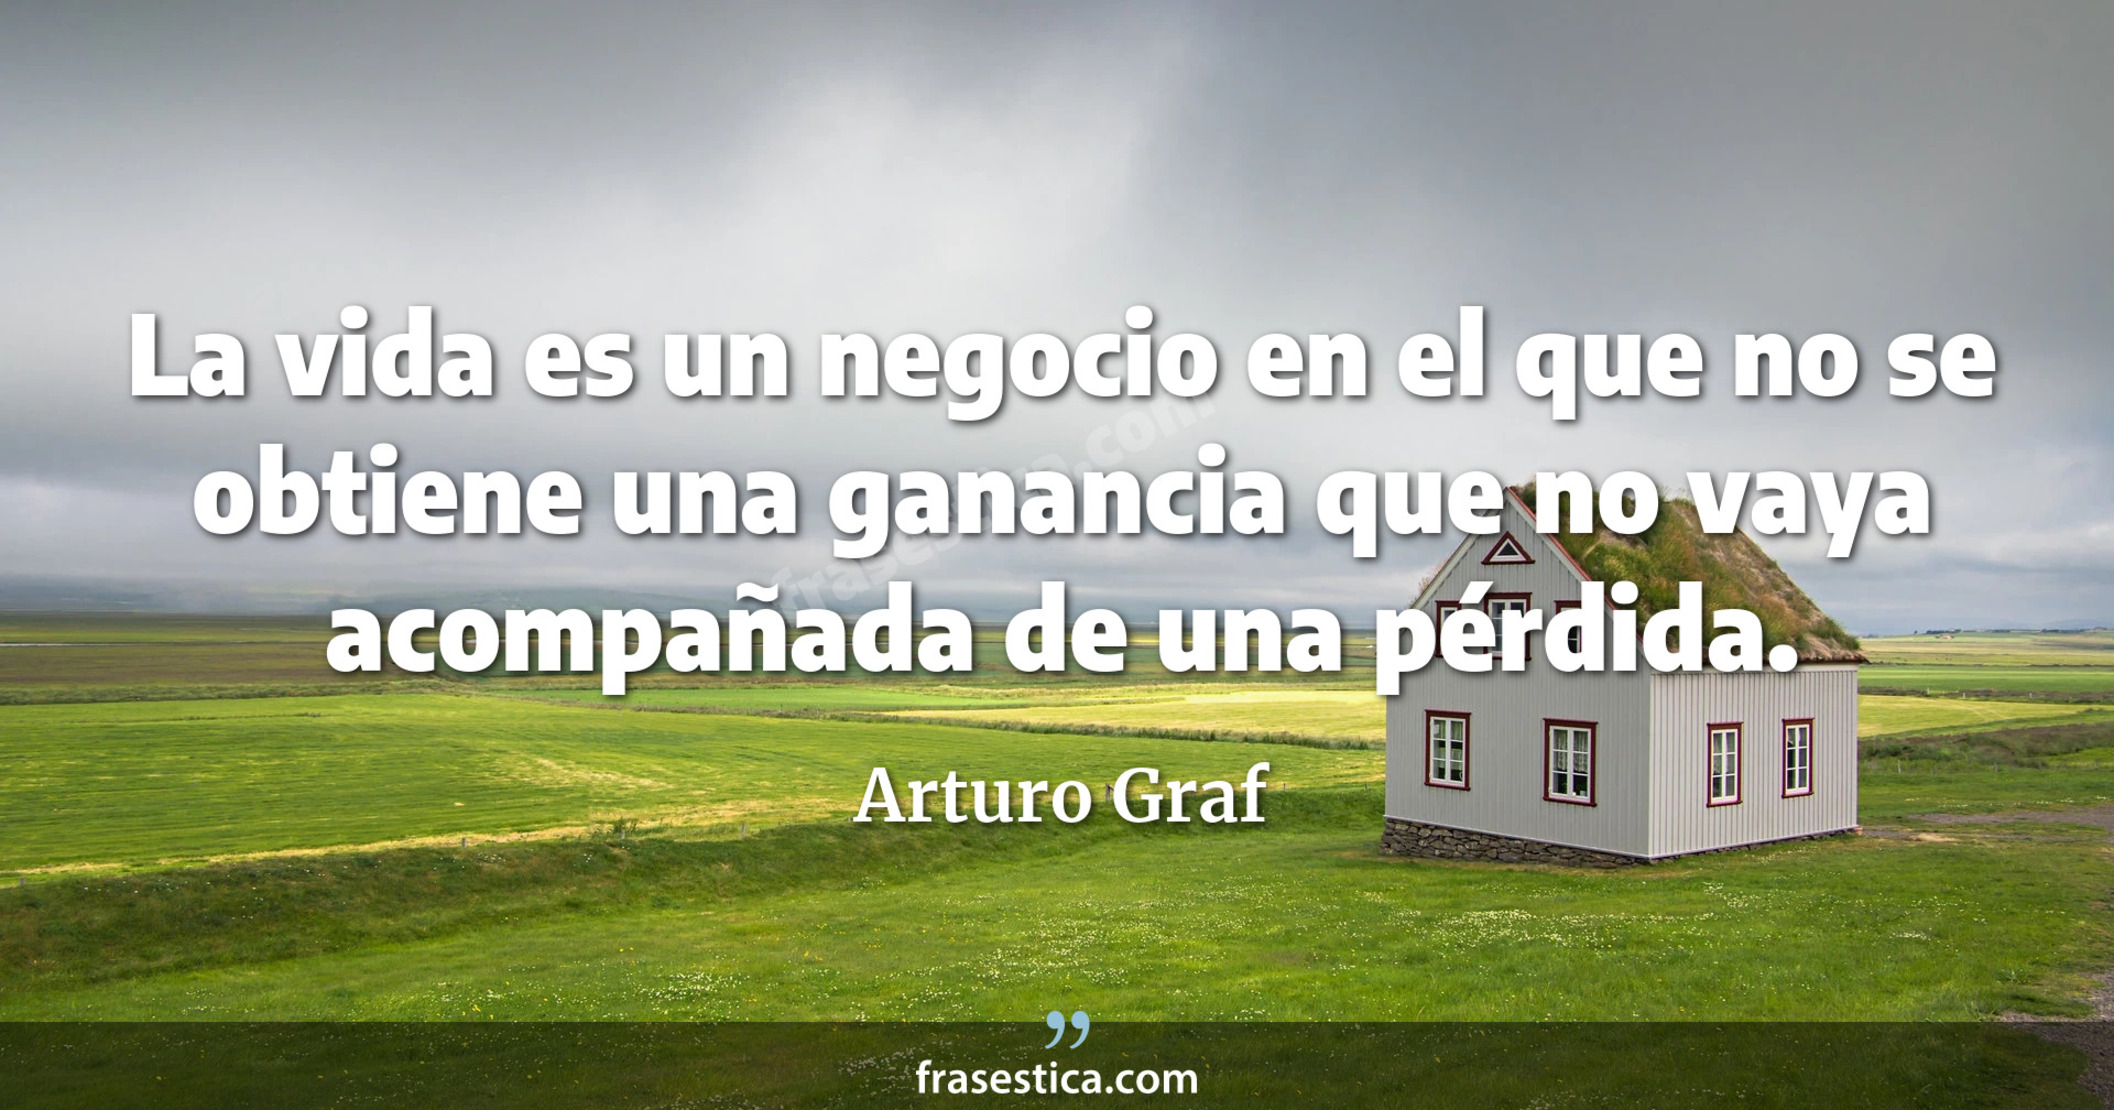 La vida es un negocio en el que no se obtiene una ganancia que no vaya acompañada de una pérdida. - Arturo Graf